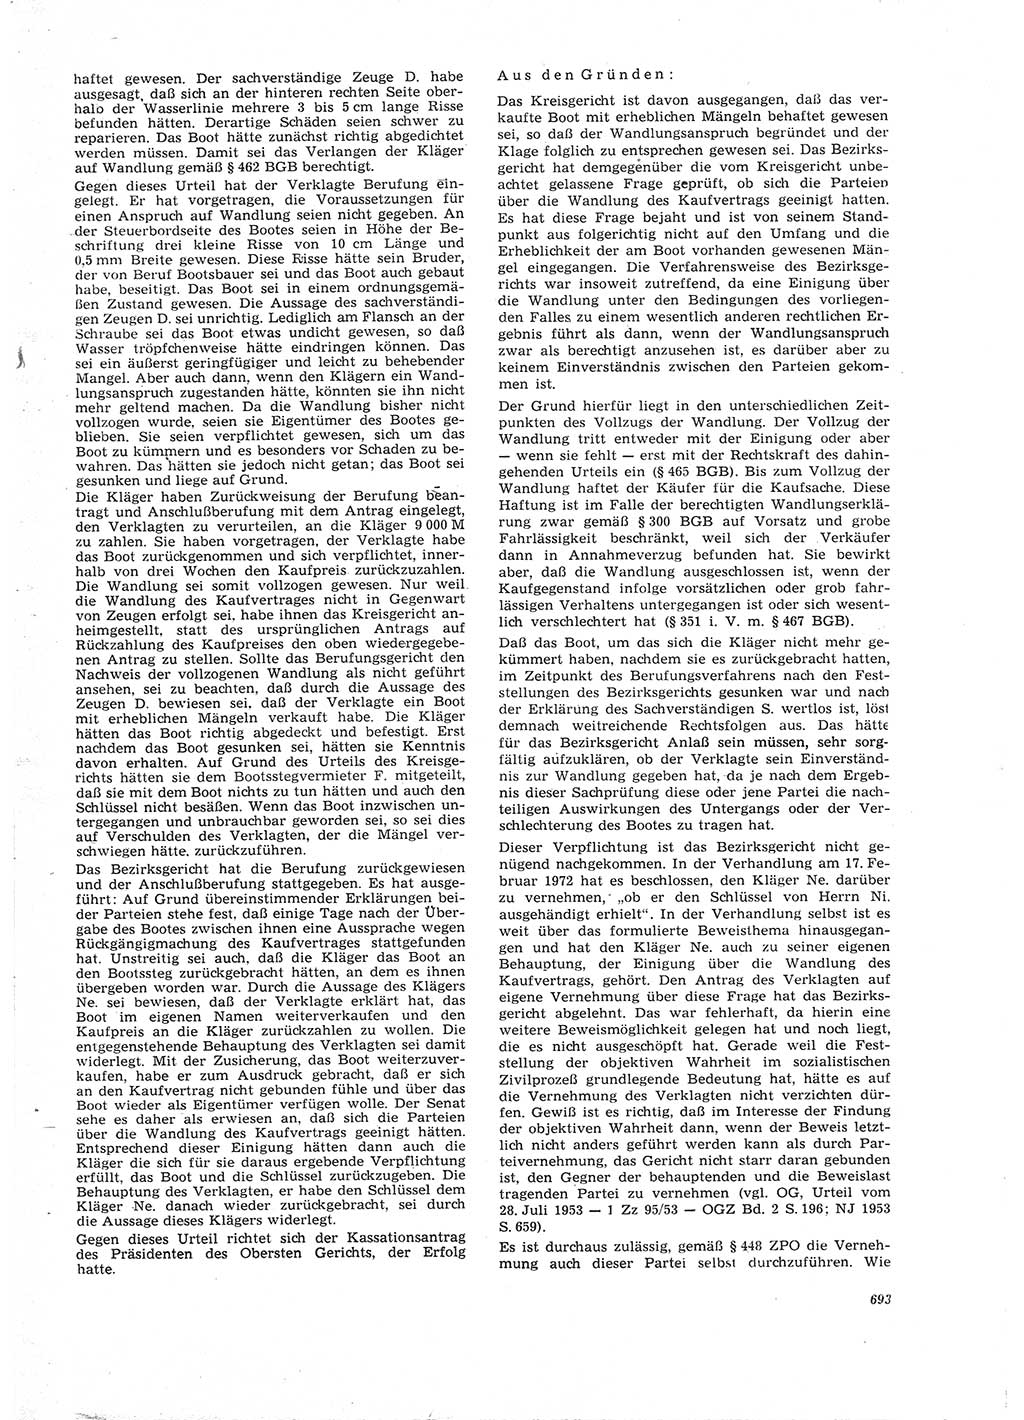 Neue Justiz (NJ), Zeitschrift für Recht und Rechtswissenschaft [Deutsche Demokratische Republik (DDR)], 26. Jahrgang 1972, Seite 693 (NJ DDR 1972, S. 693)